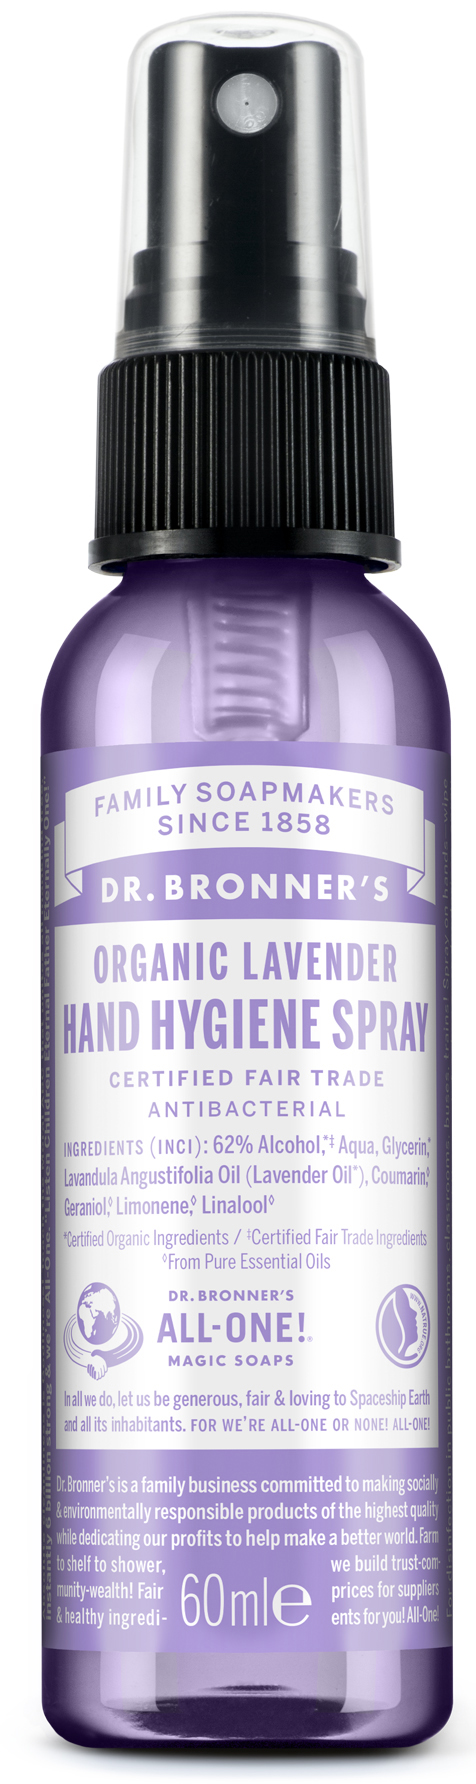 Lavender Hand Sanitiser